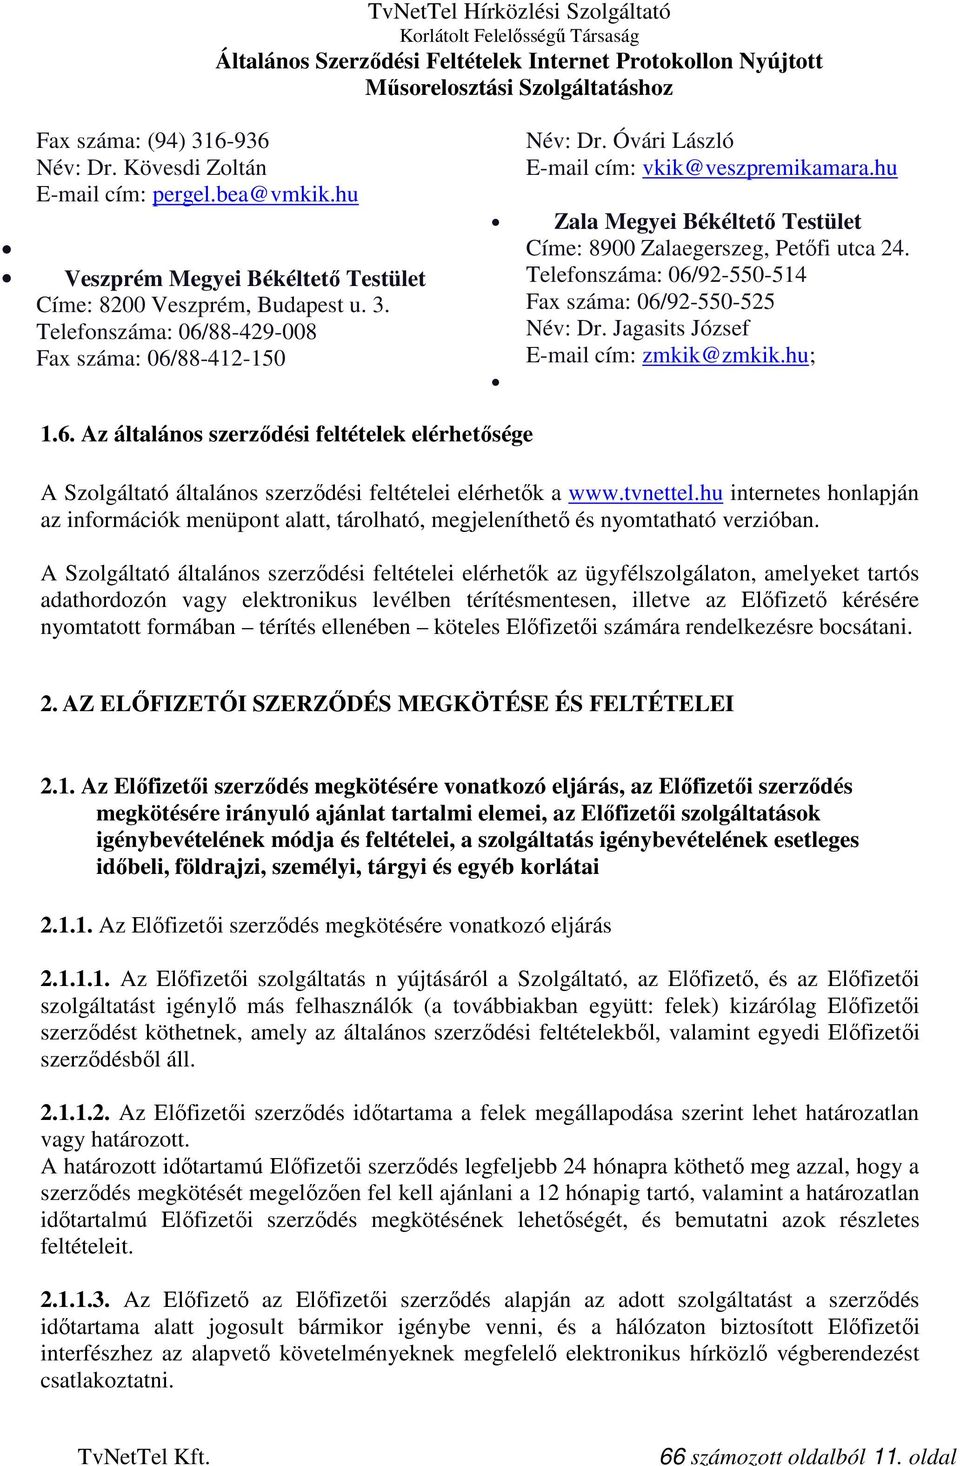 Jagasits József E-mail cím: zmkik@zmkik.hu; 1.6. Az általános szerződési feltételek elérhetősége A Szolgáltató általános szerződési feltételei elérhetők a www.tvnettel.